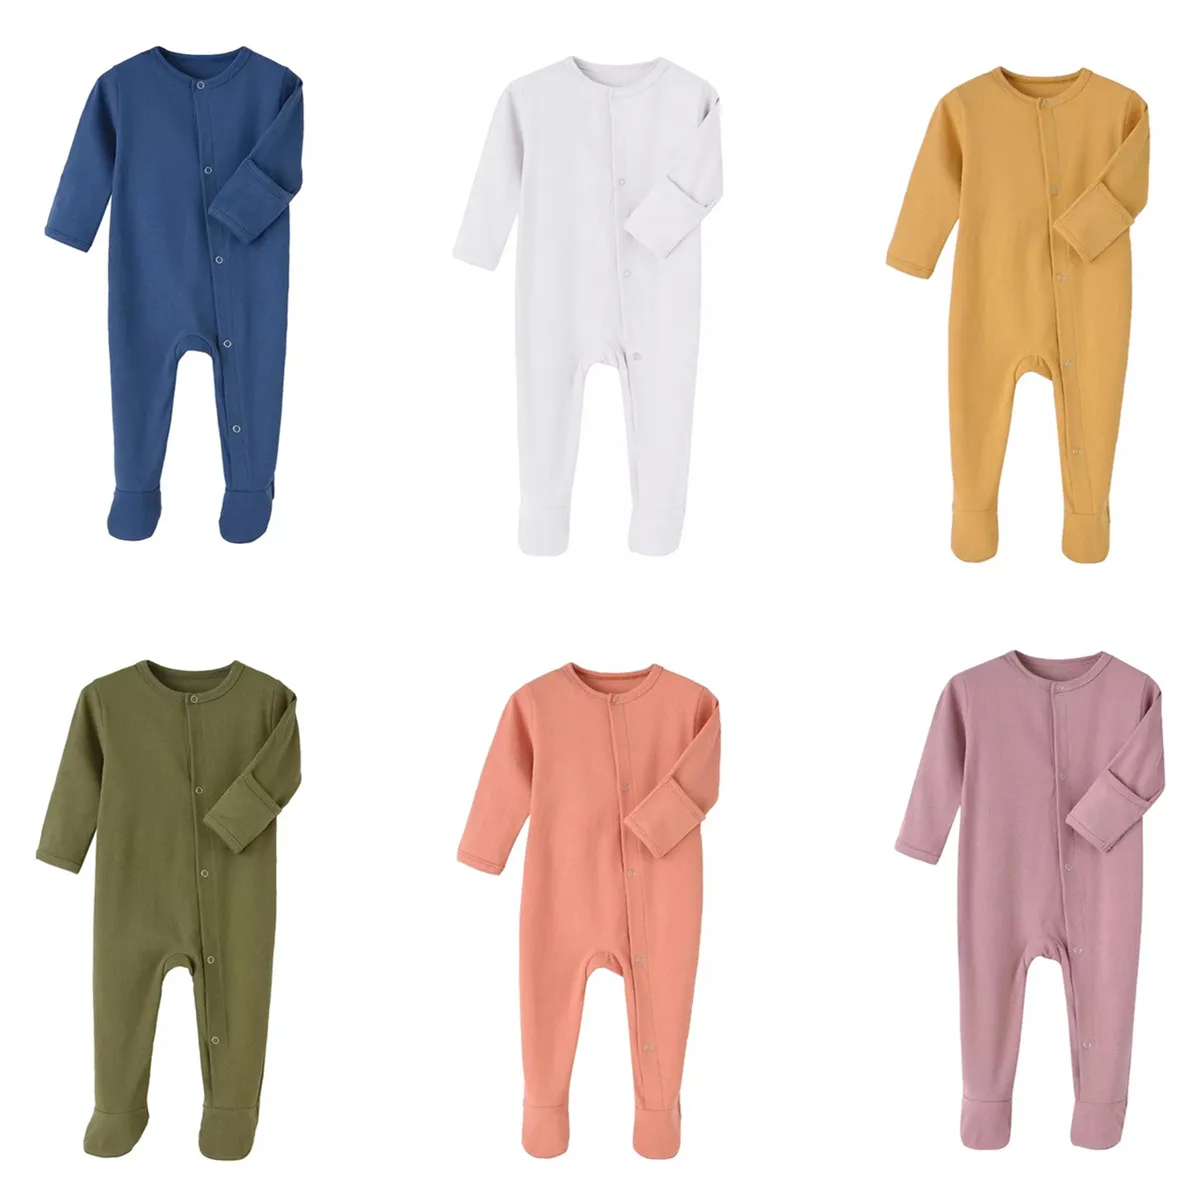 Kdfn 9 colores recién nacido bebé sólidos sólidos manga larga onesies diseños de niños ropa niños niñas infantiles mameluco llano punto de punto